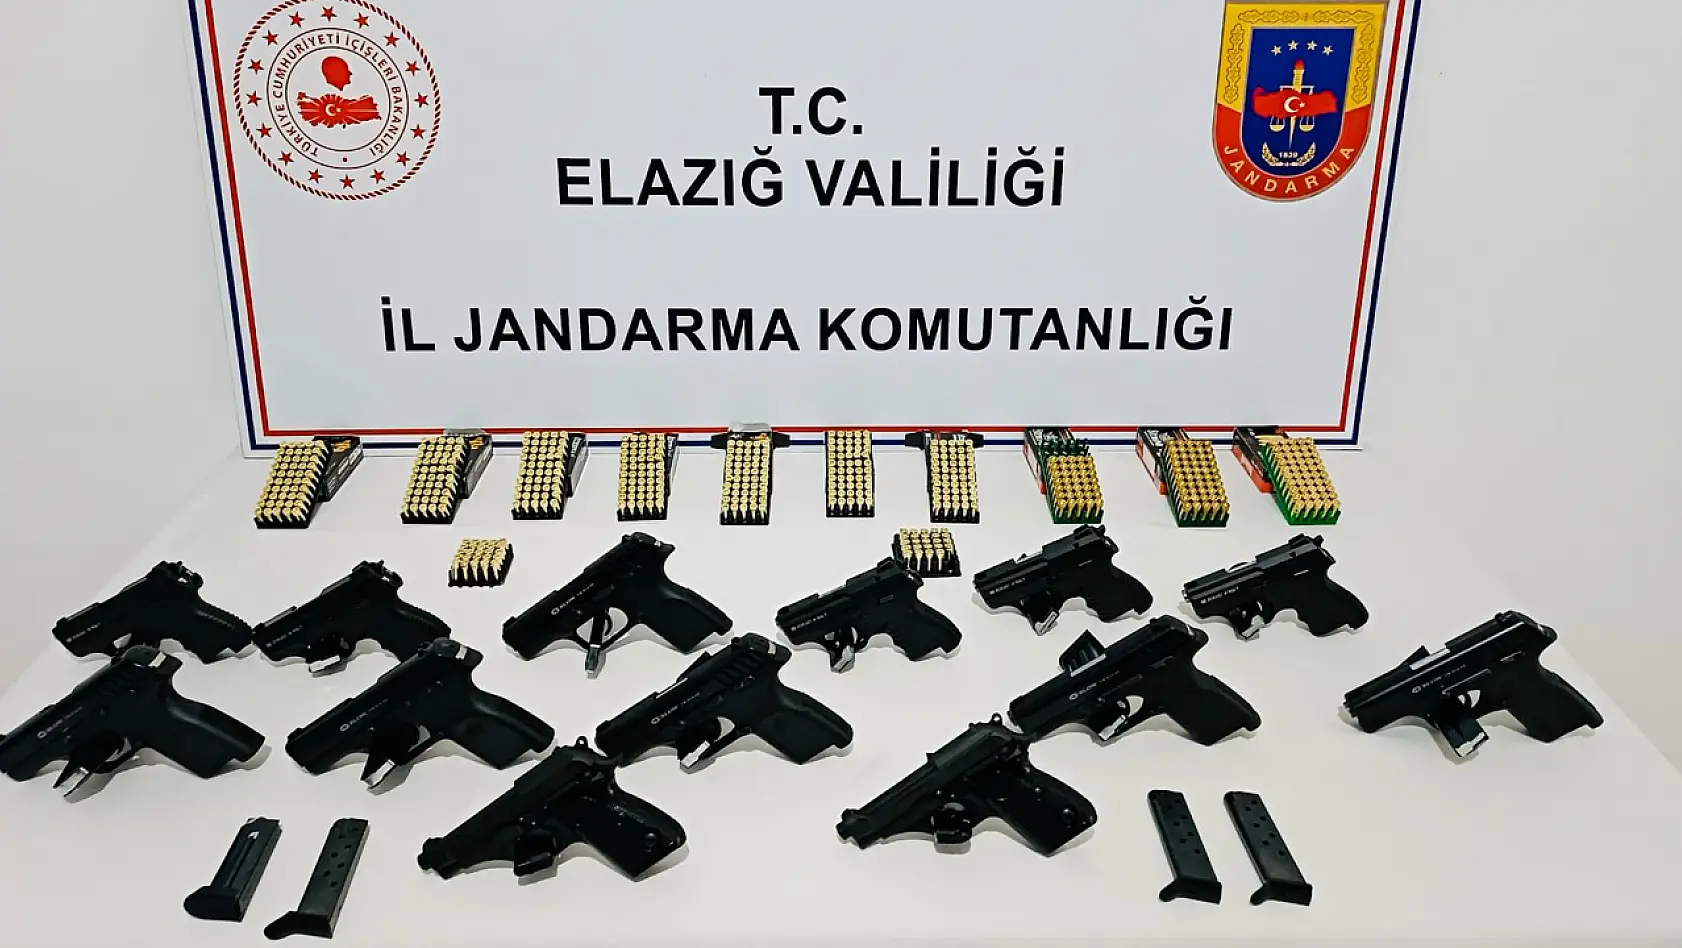 Elazığ'da Jandarmadan Silah Kaçakçılığı Operasyonu 1 Şüpheli Tutuklandı